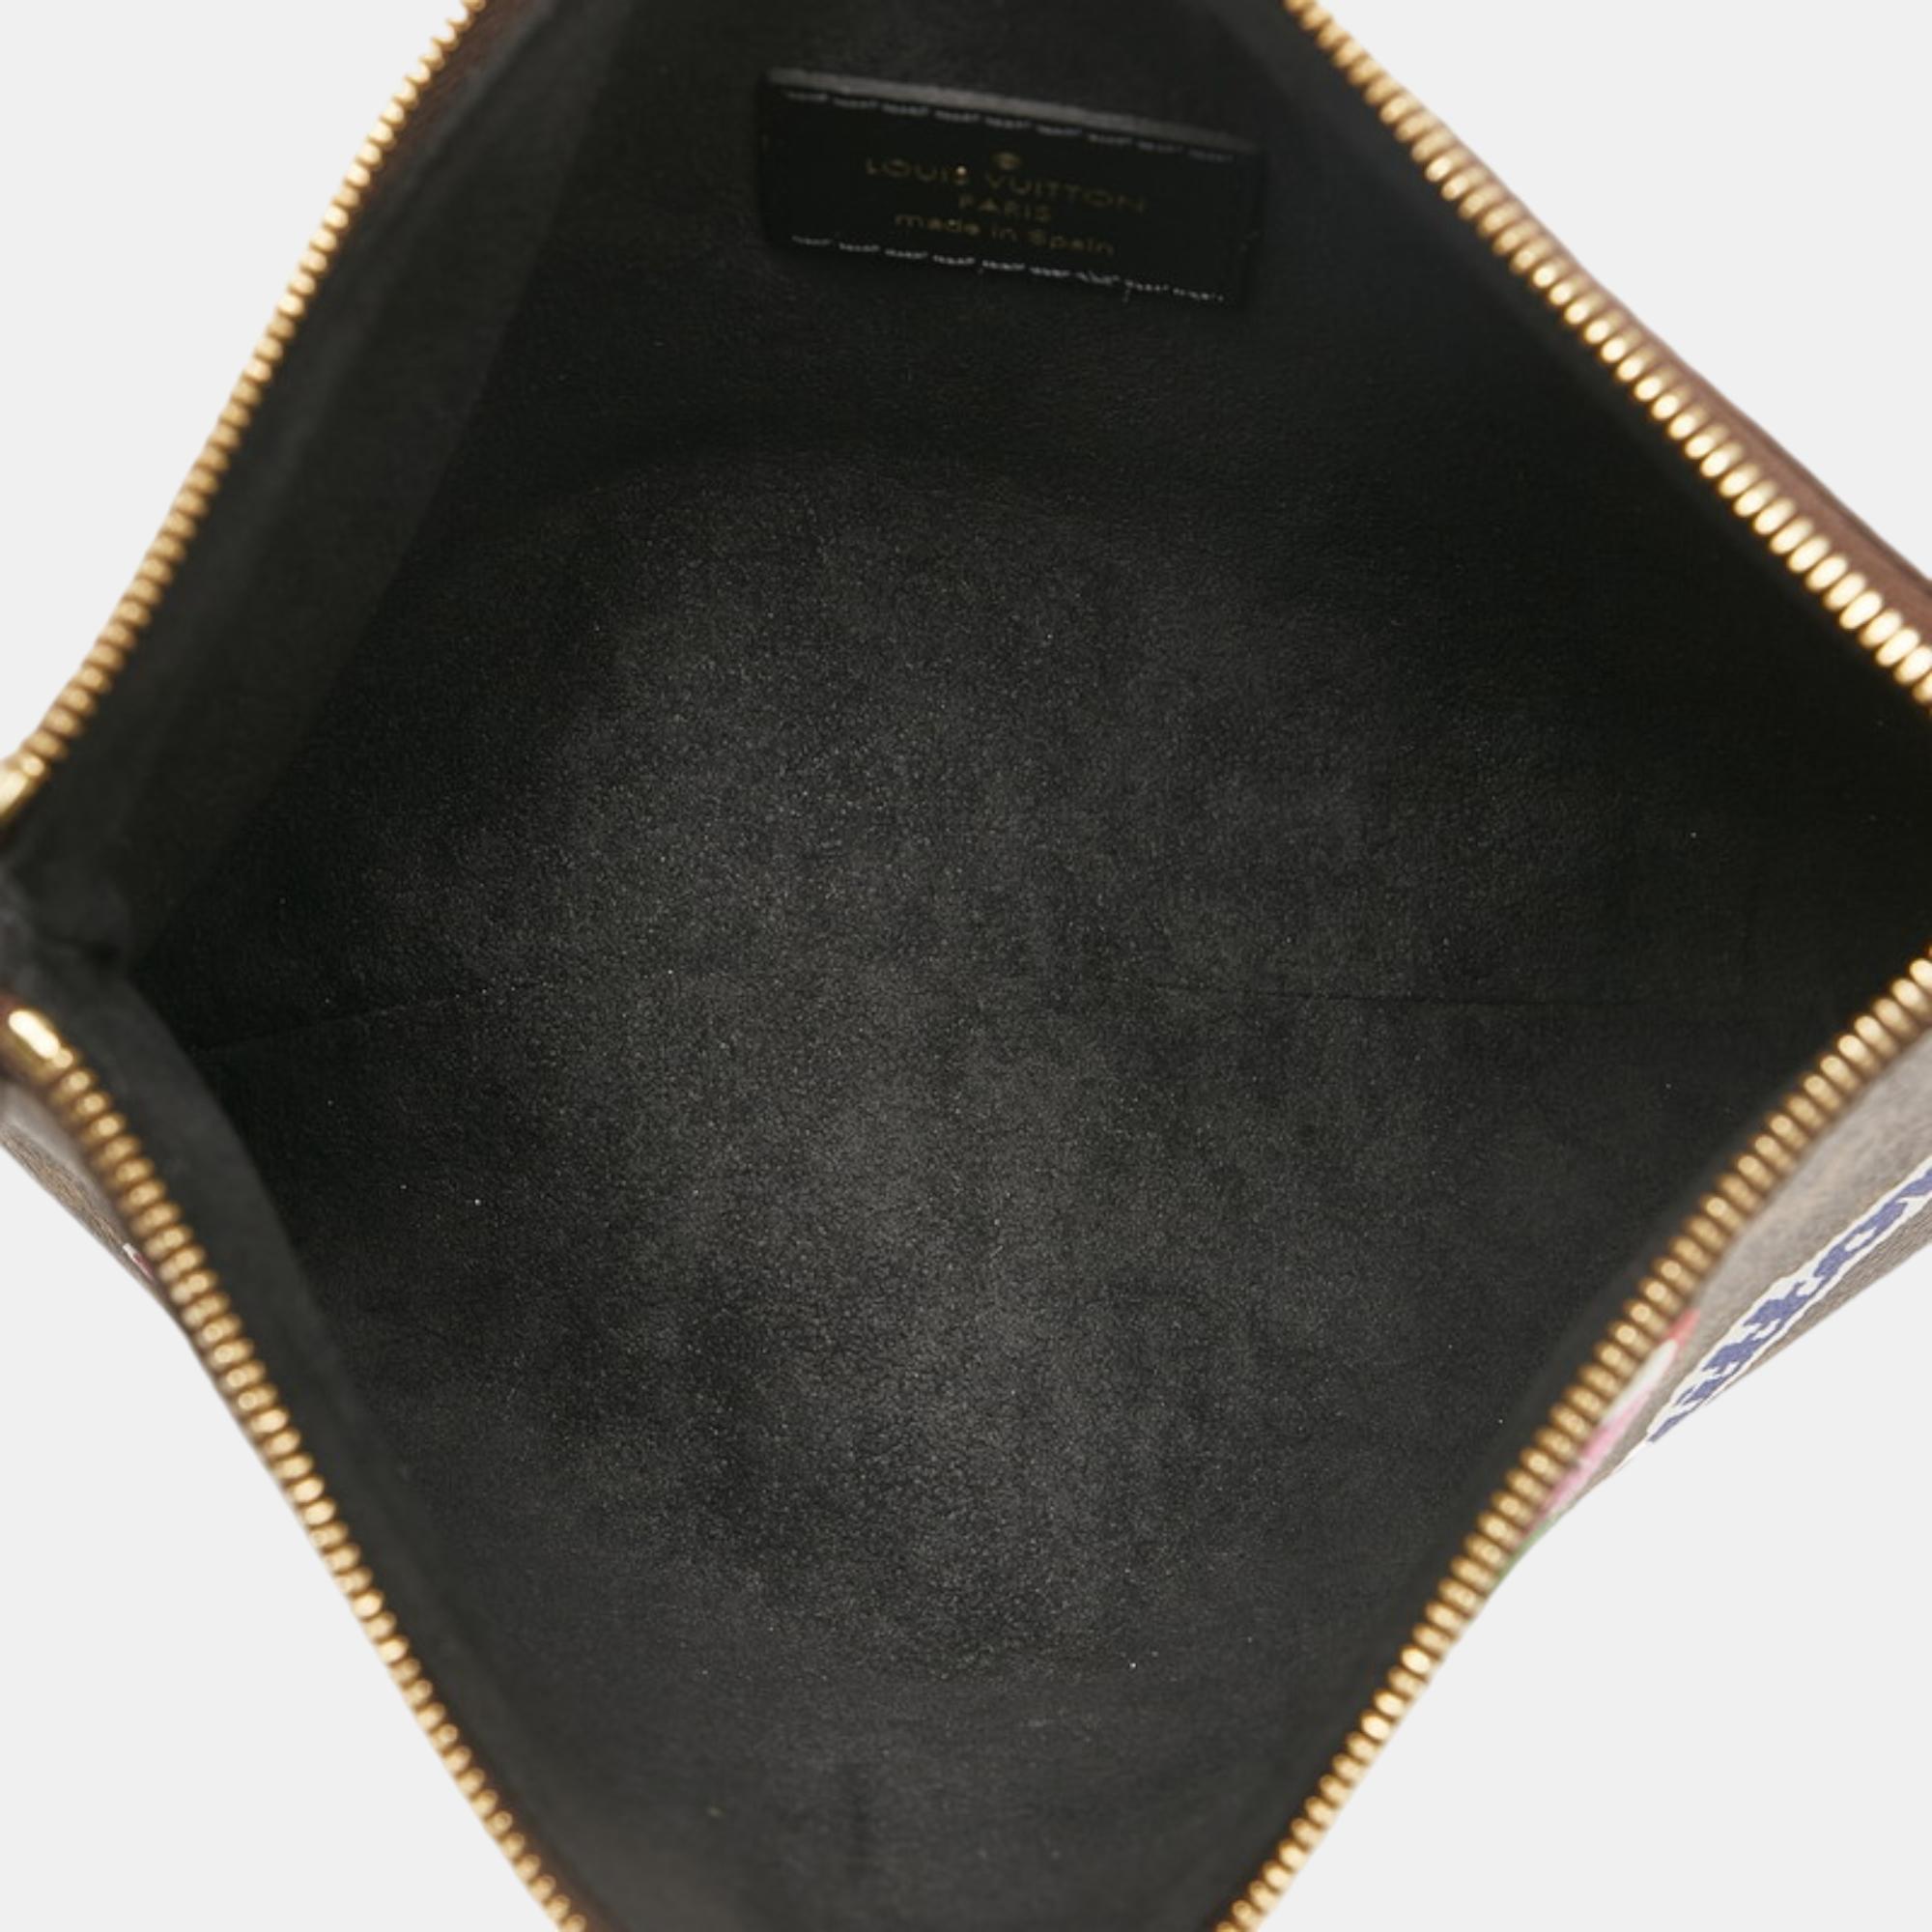 Louis Vuitton Brown Canvas Monogram City Pouch Vanity Bag